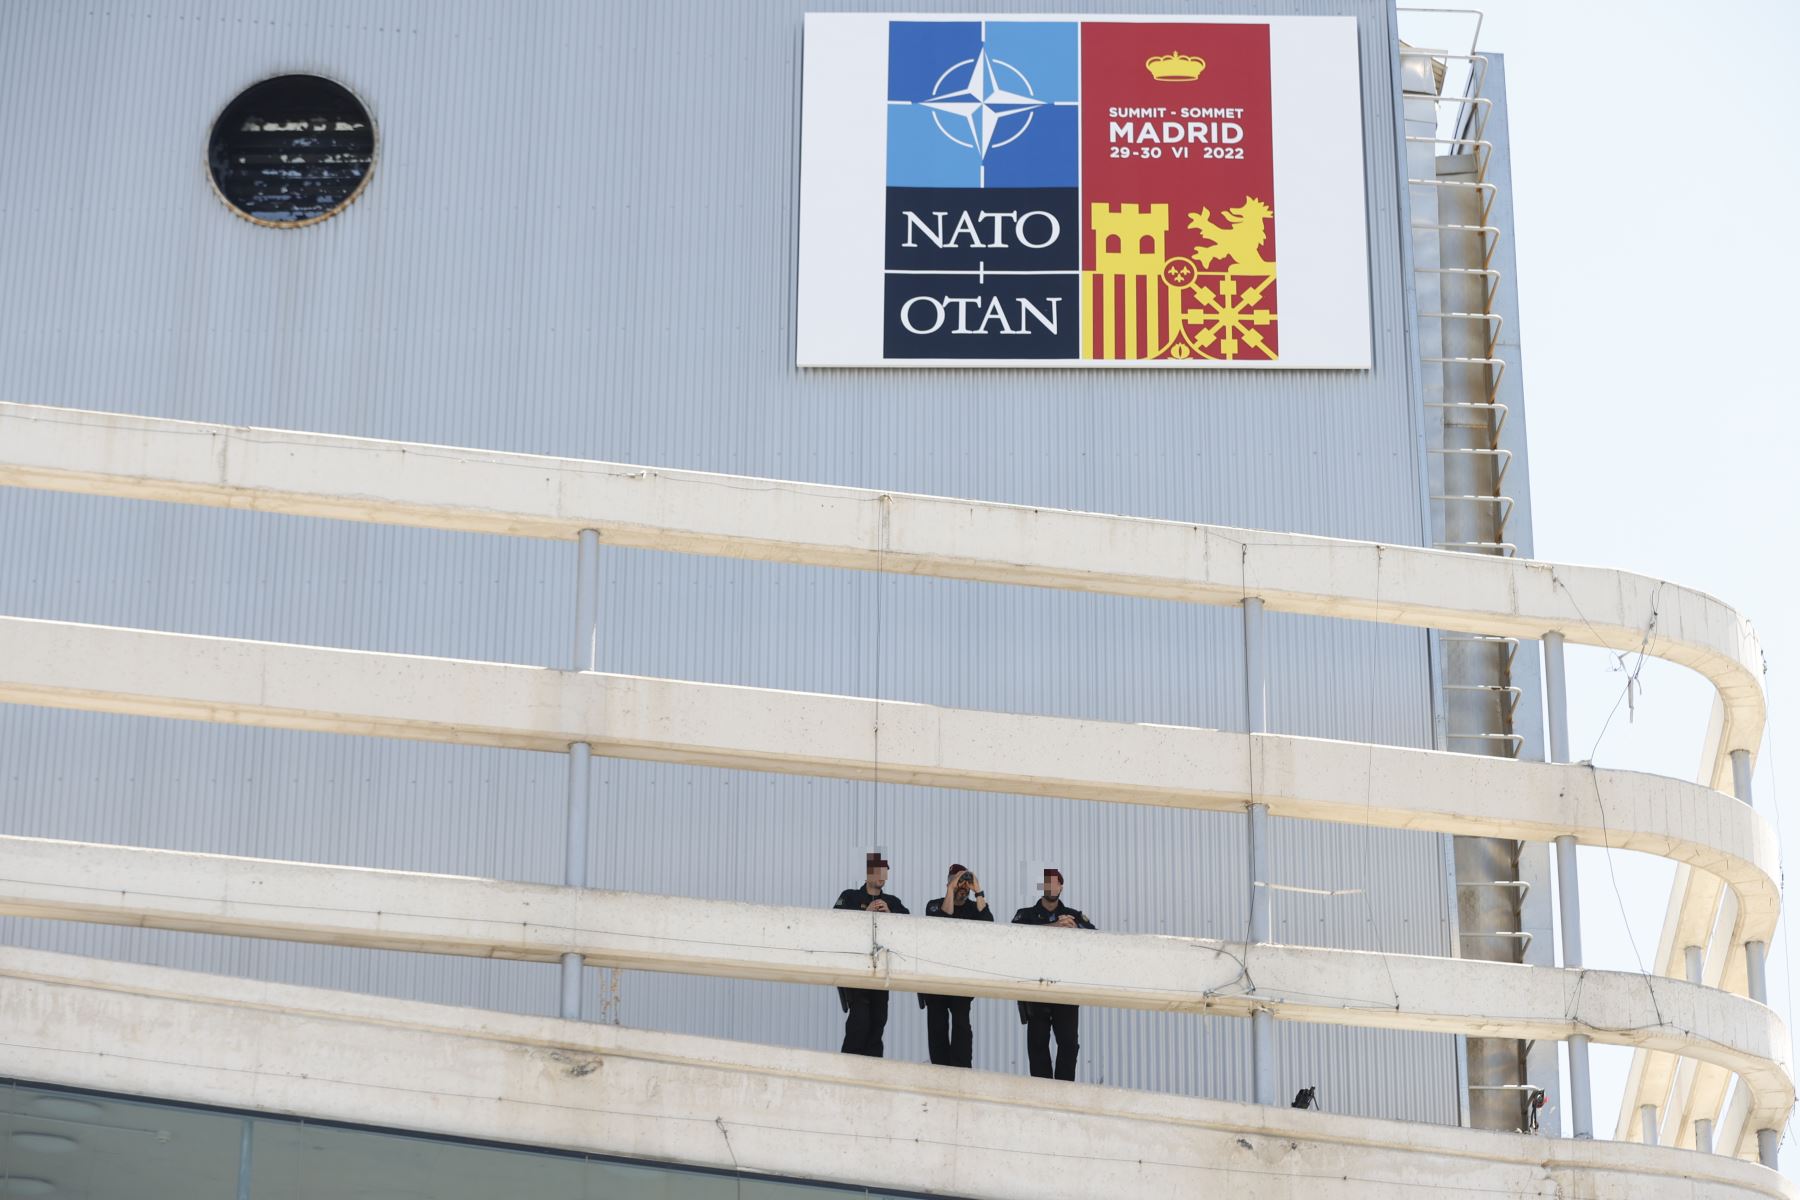 Miembros de la policía nacional durante la primera jornada de la cumbre de la OTAN que se celebra este miércoles en el recinto de Ifema, en Madrid. 
Foto: EFE